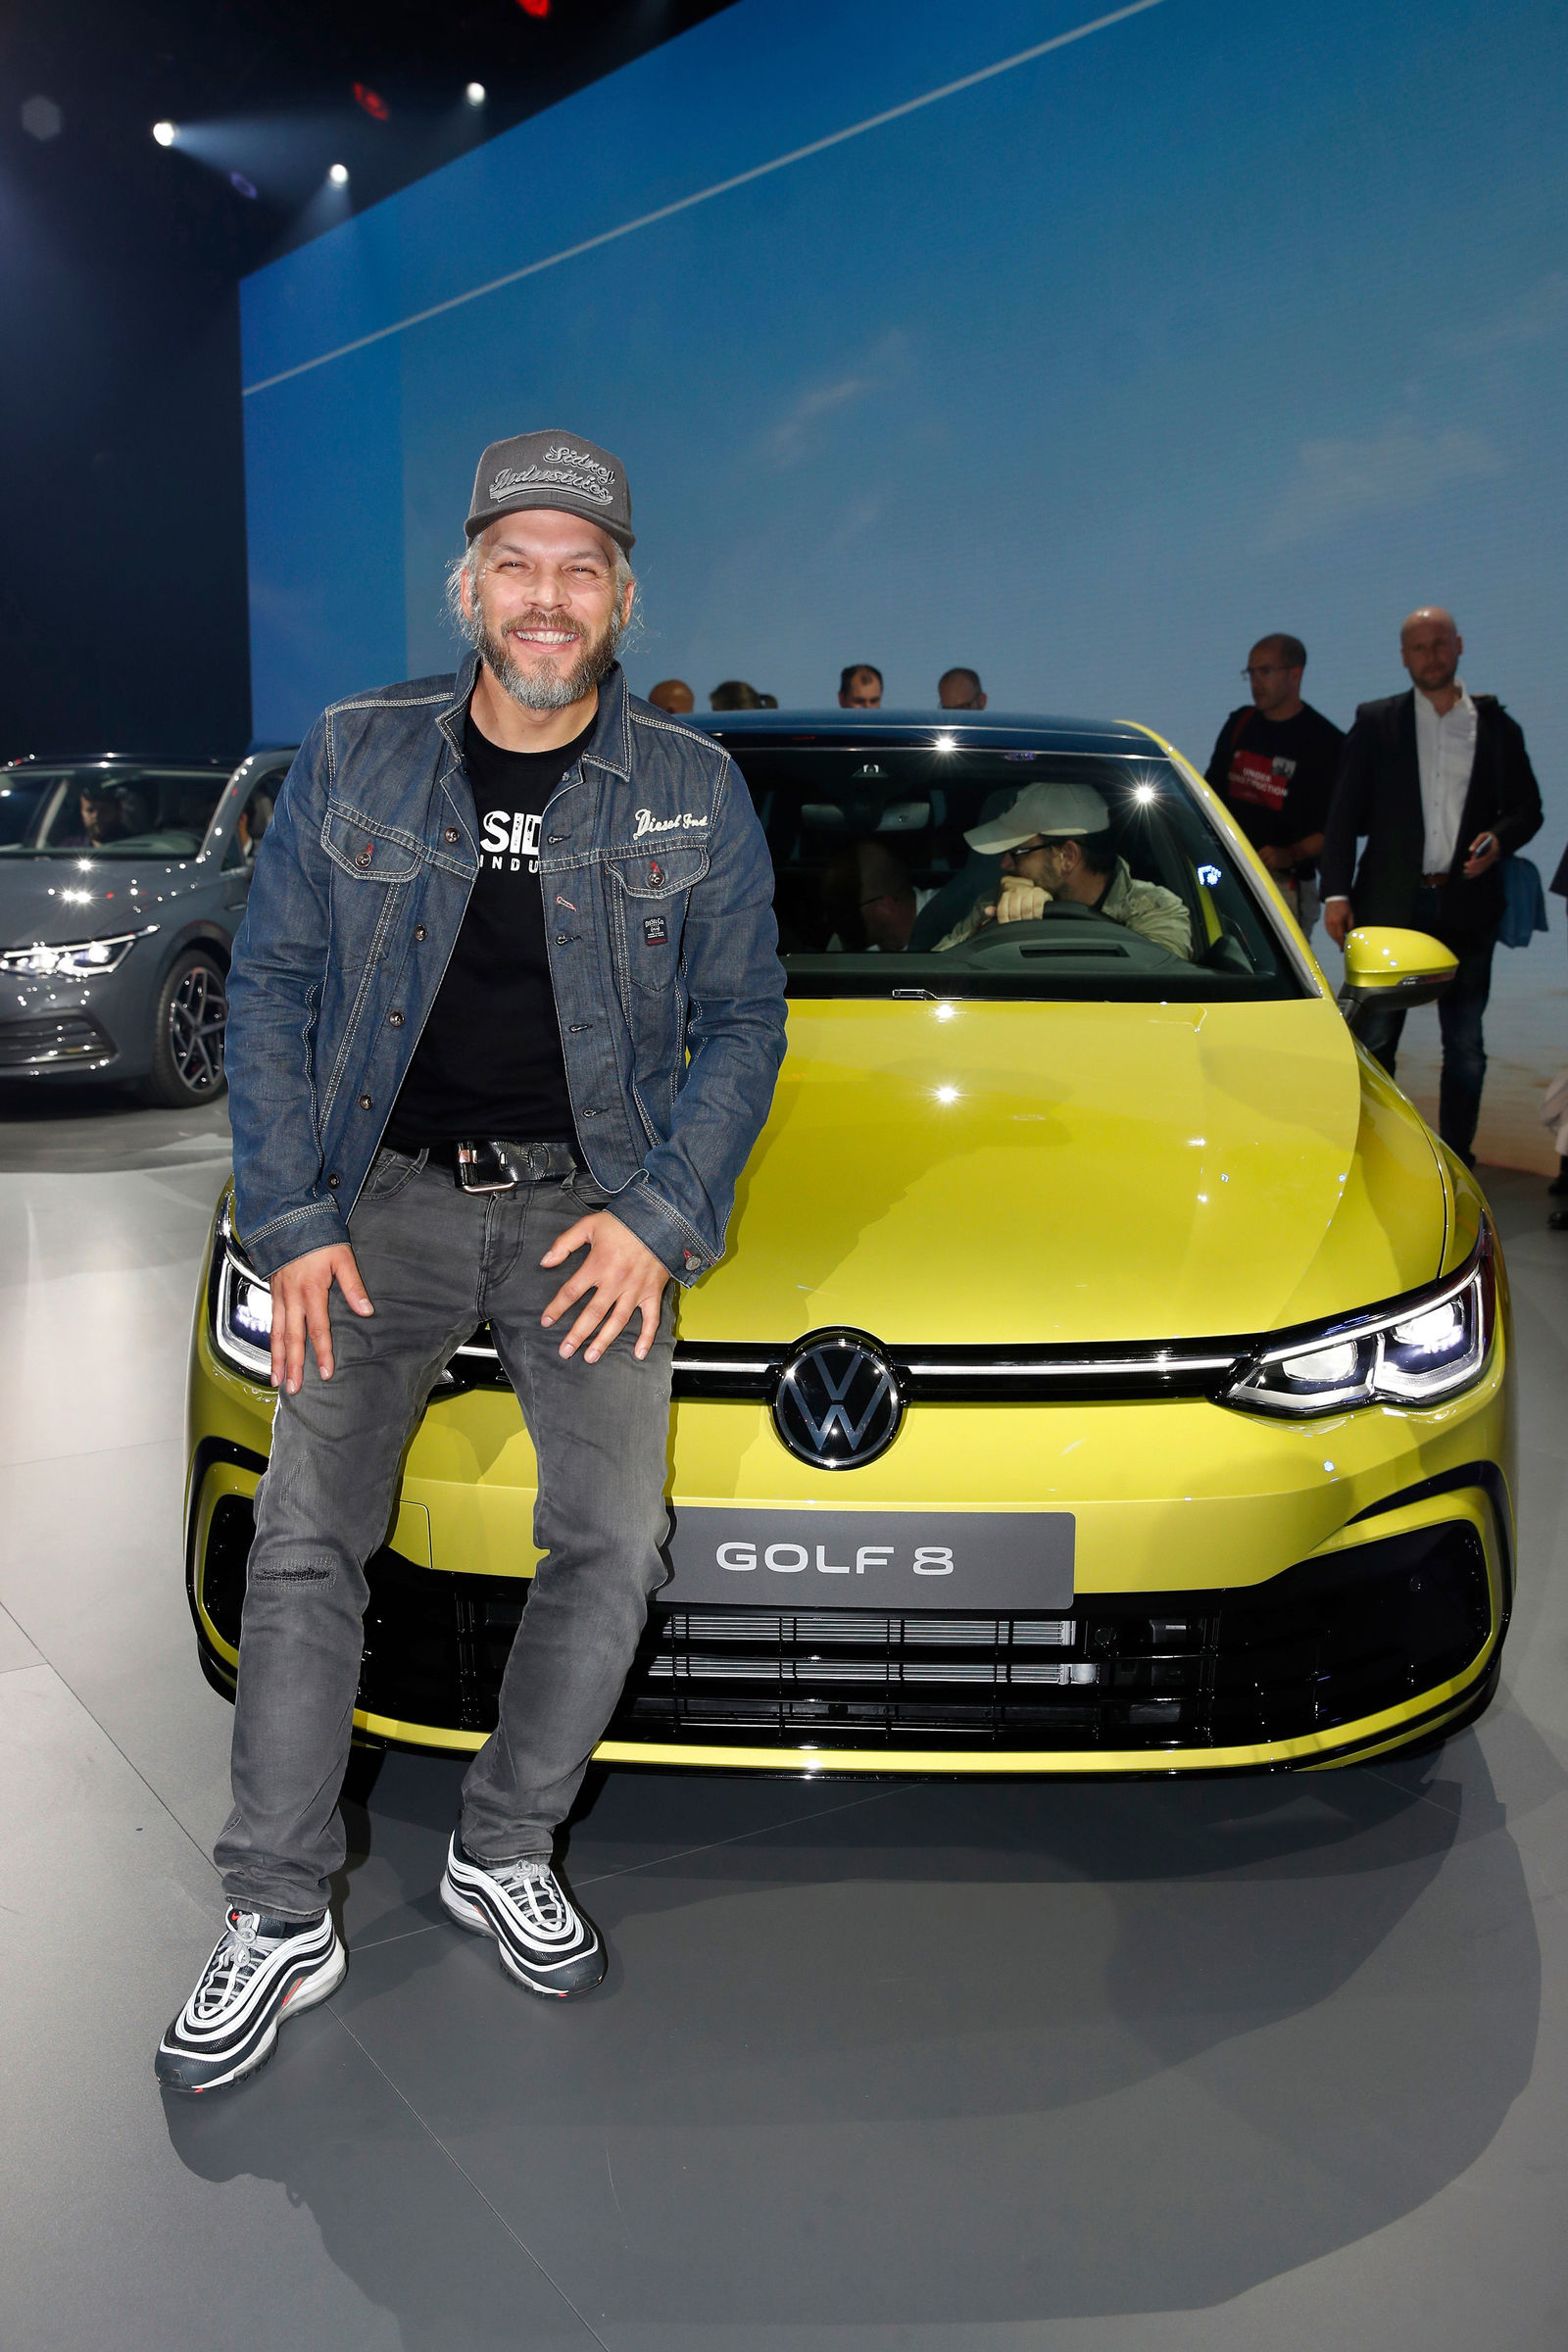 Weltpremiere des neuen Golf am 24. Oktober 2019 in Wolfsburg